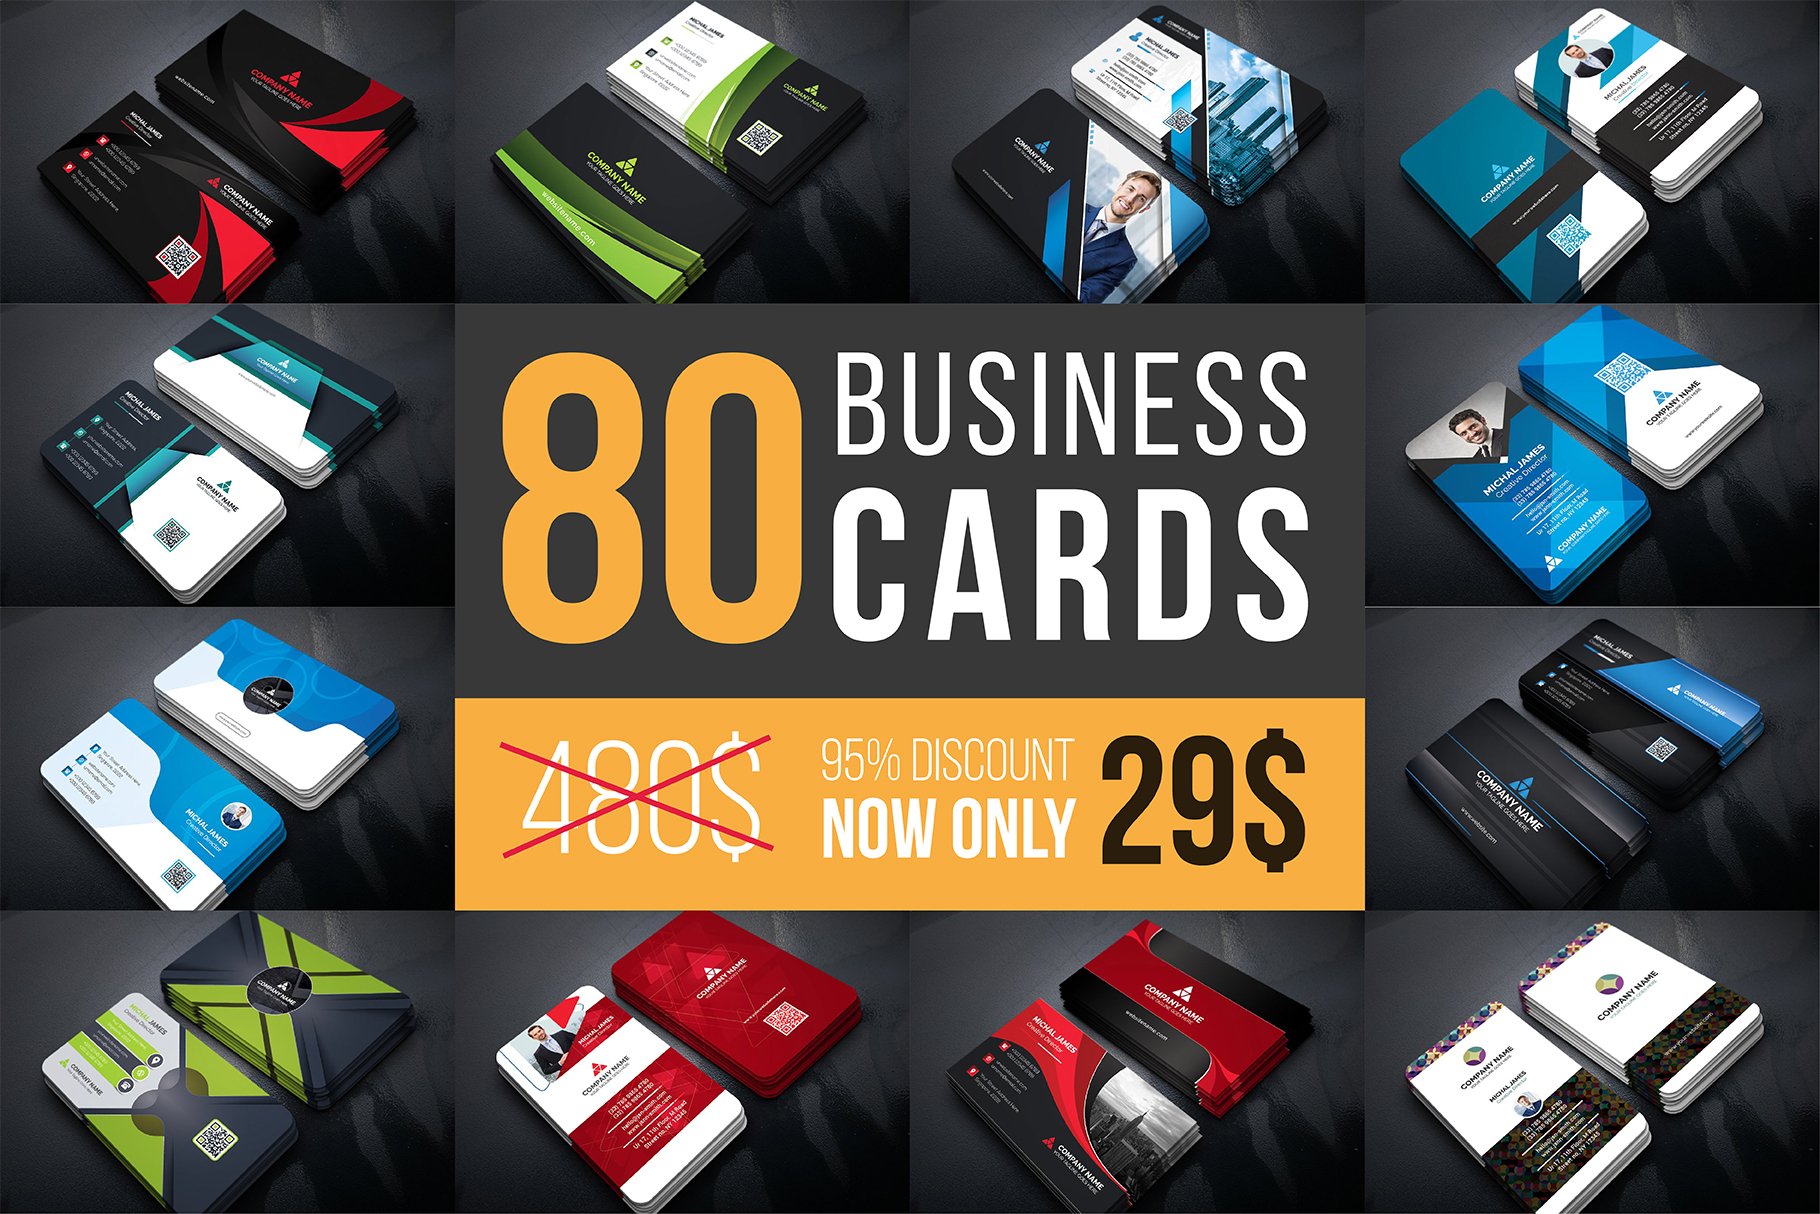 [GET] 80 Business Cards Mega Bundle Free Download